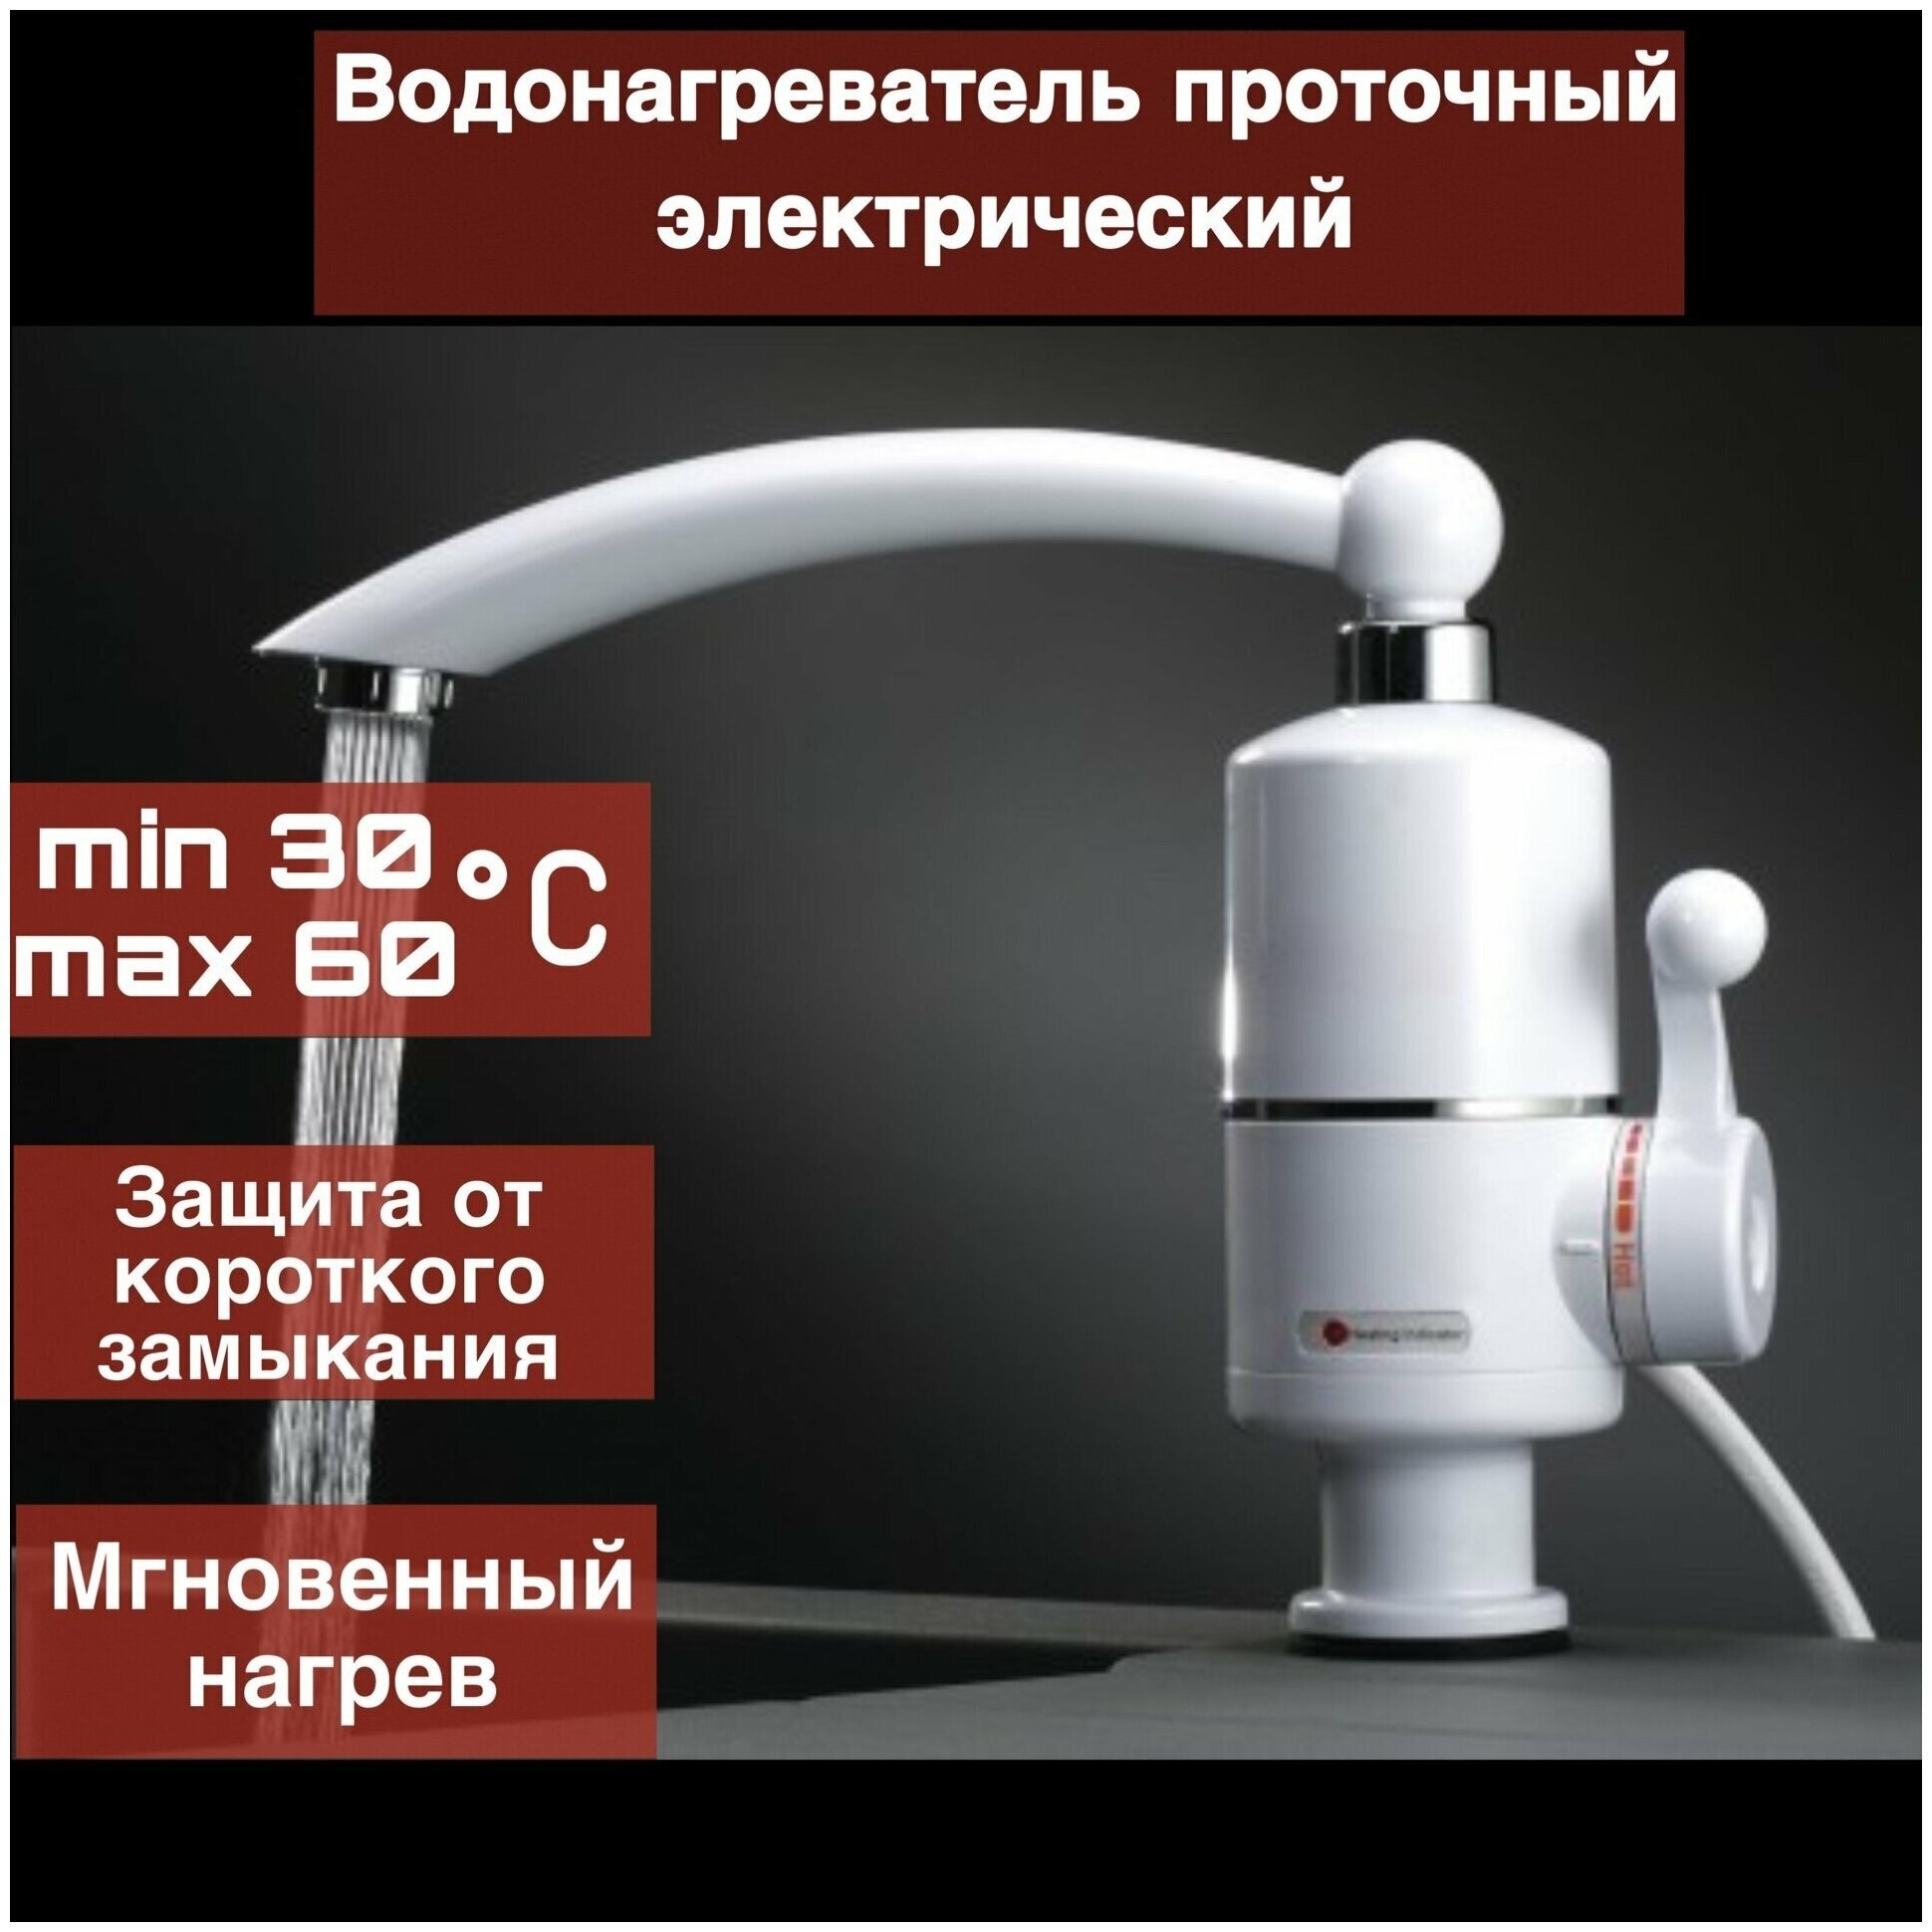 Проточный водонагреватель RX-004 проточный водонагреватель с металлическим краном до 60 градусов, Мини бойлер